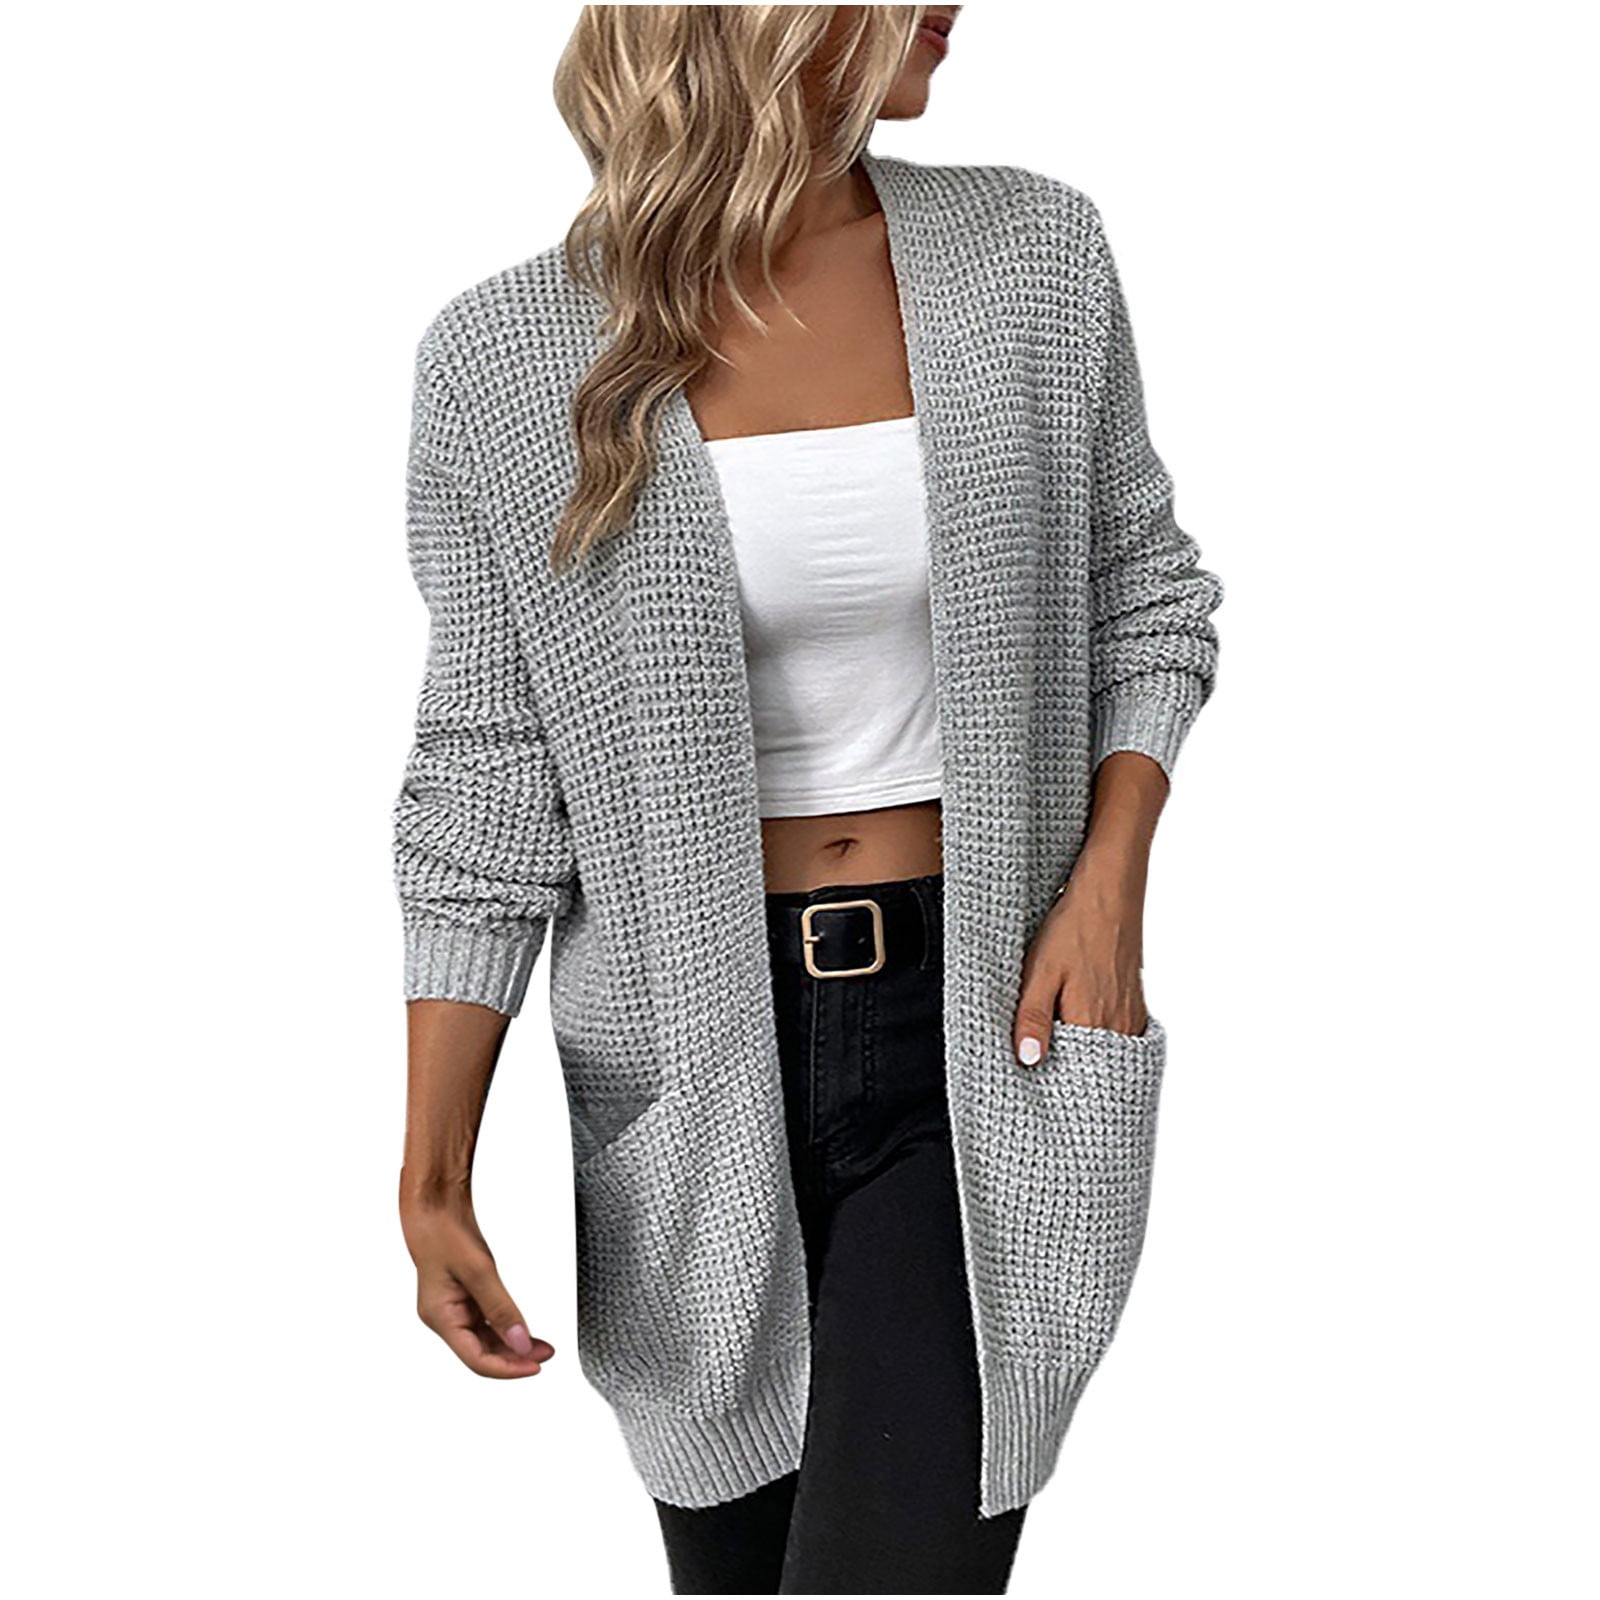 Cardigan Sweaters for Women Women Casual Soild Long Sleeve Pocket Knit Cardigan  Sweater Coat Outwear - Walmart.com